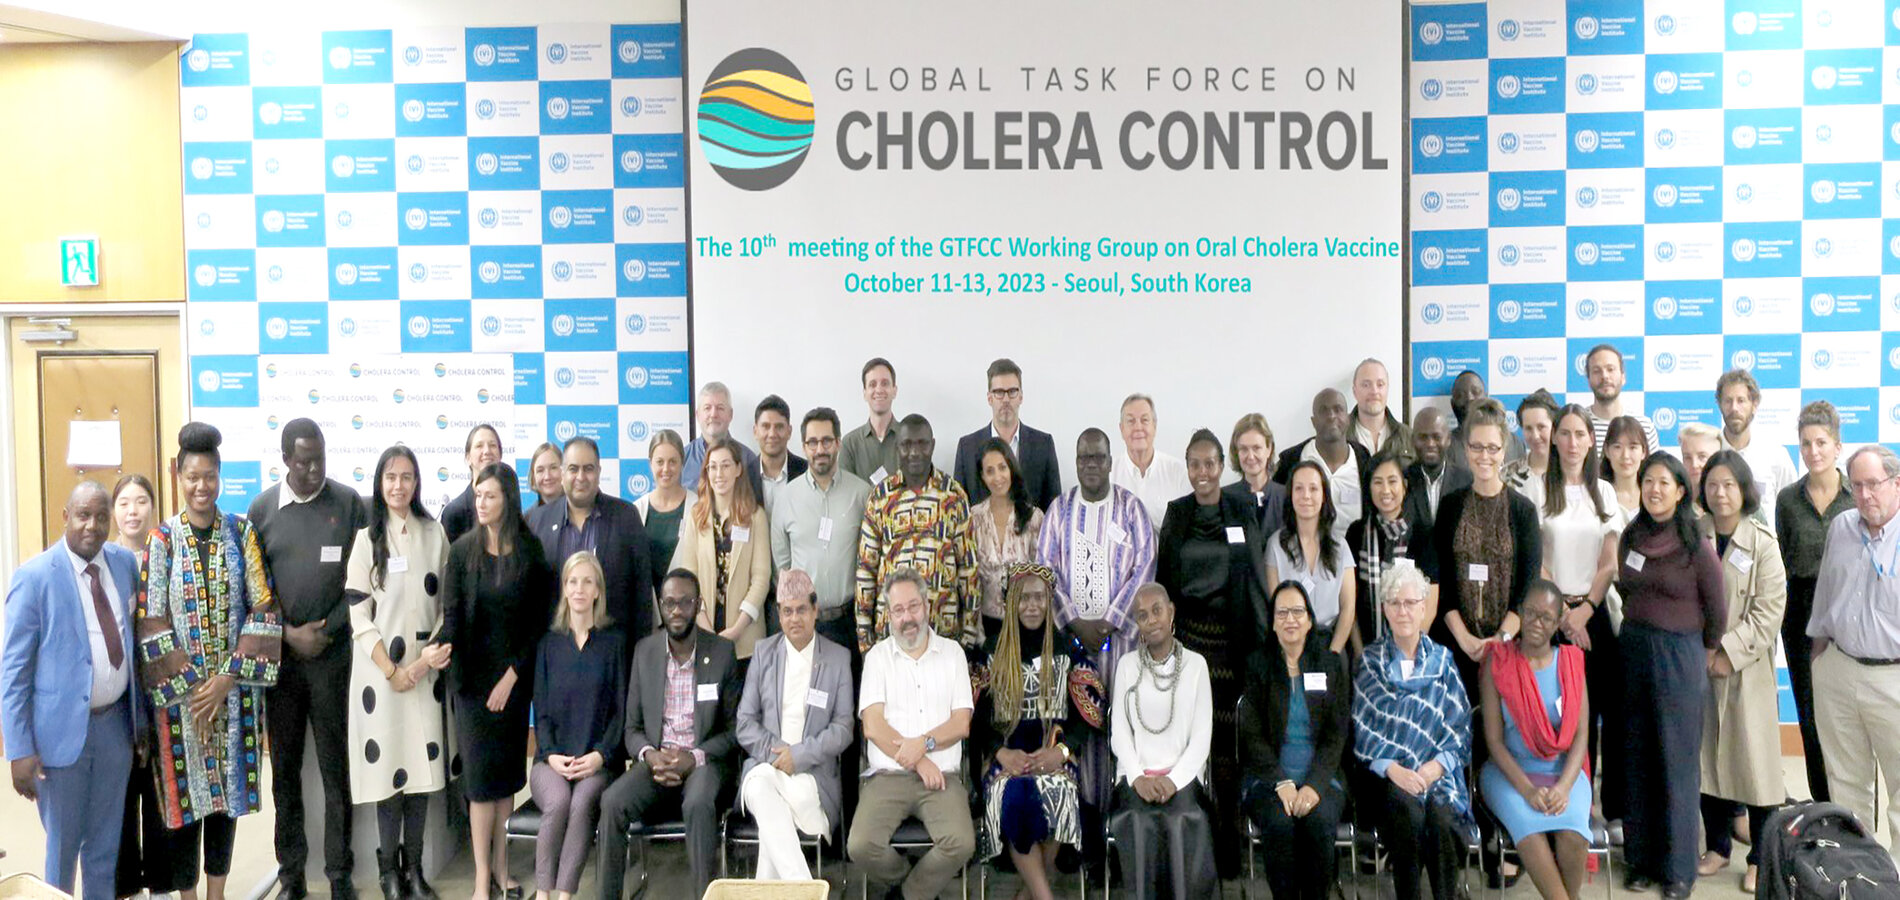 Les participants à la 10e réunion du Groupe de travail mondial sur la lutte contre le choléra